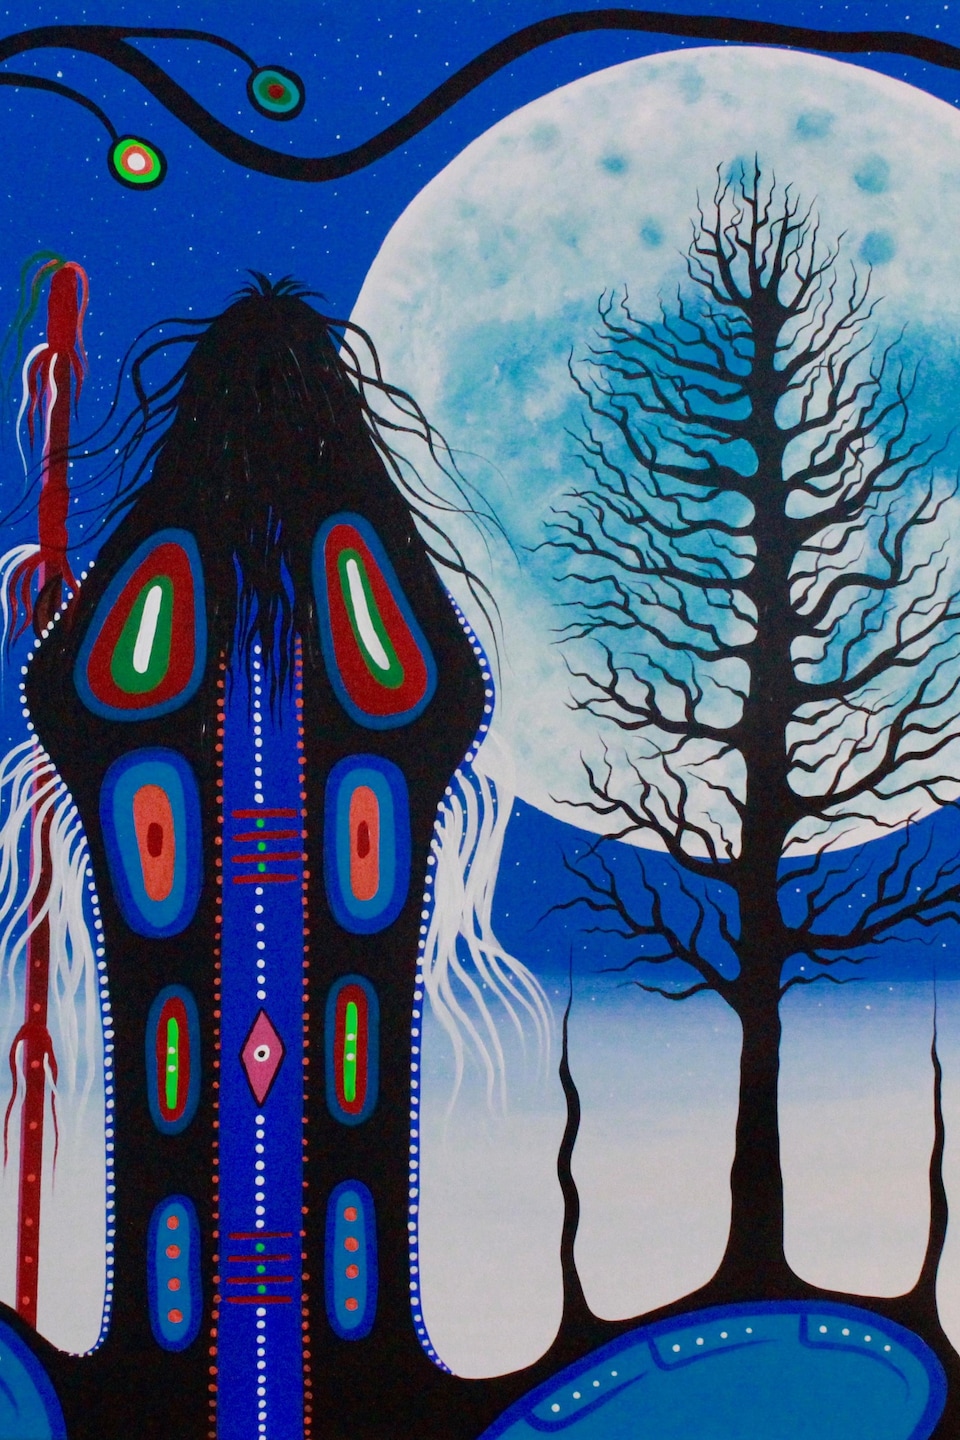 La toile représente une personne de dos qui observe la pleine lune, avec un arbre devant.